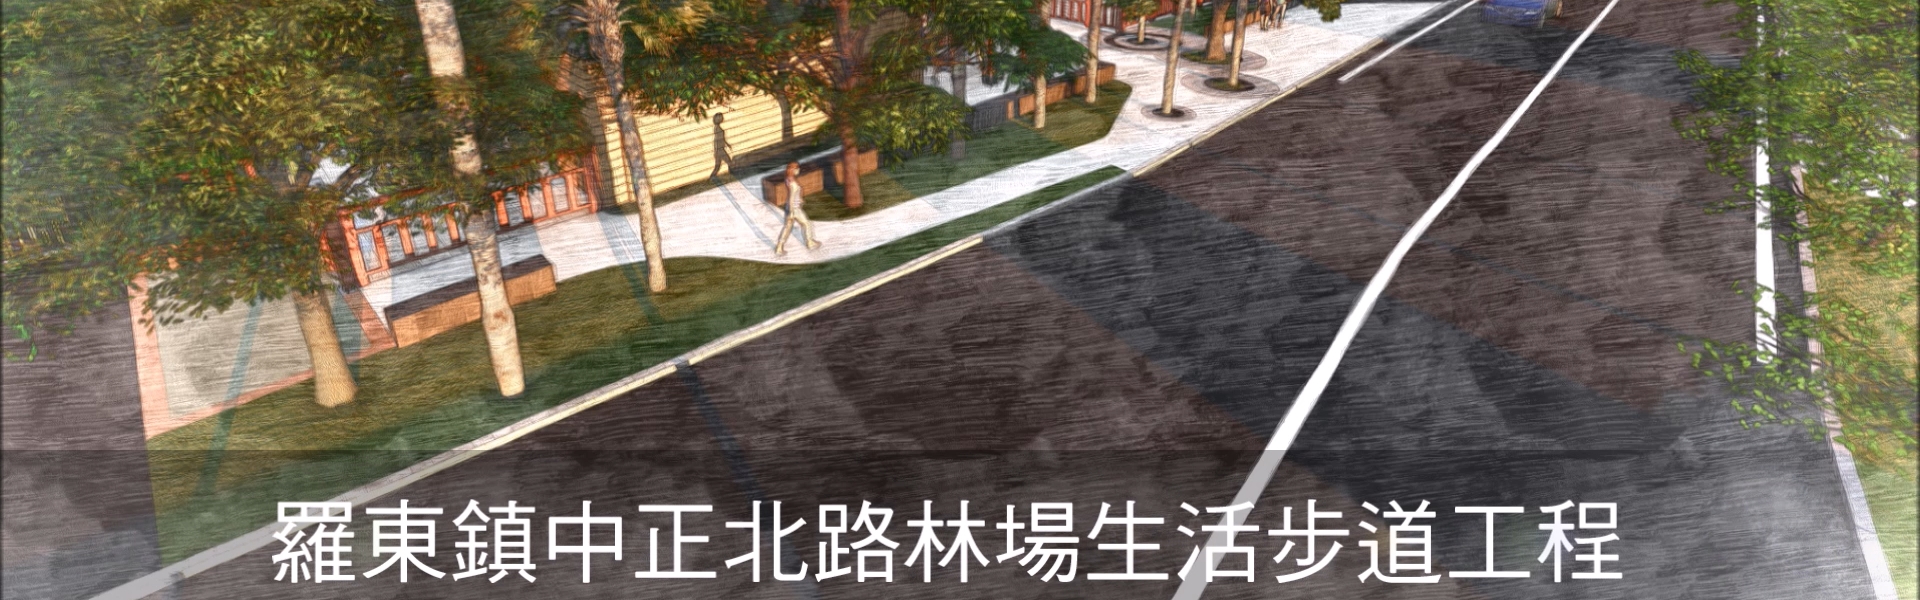 羅東鎮中正北路林場生活步道工程-實景3D動畫